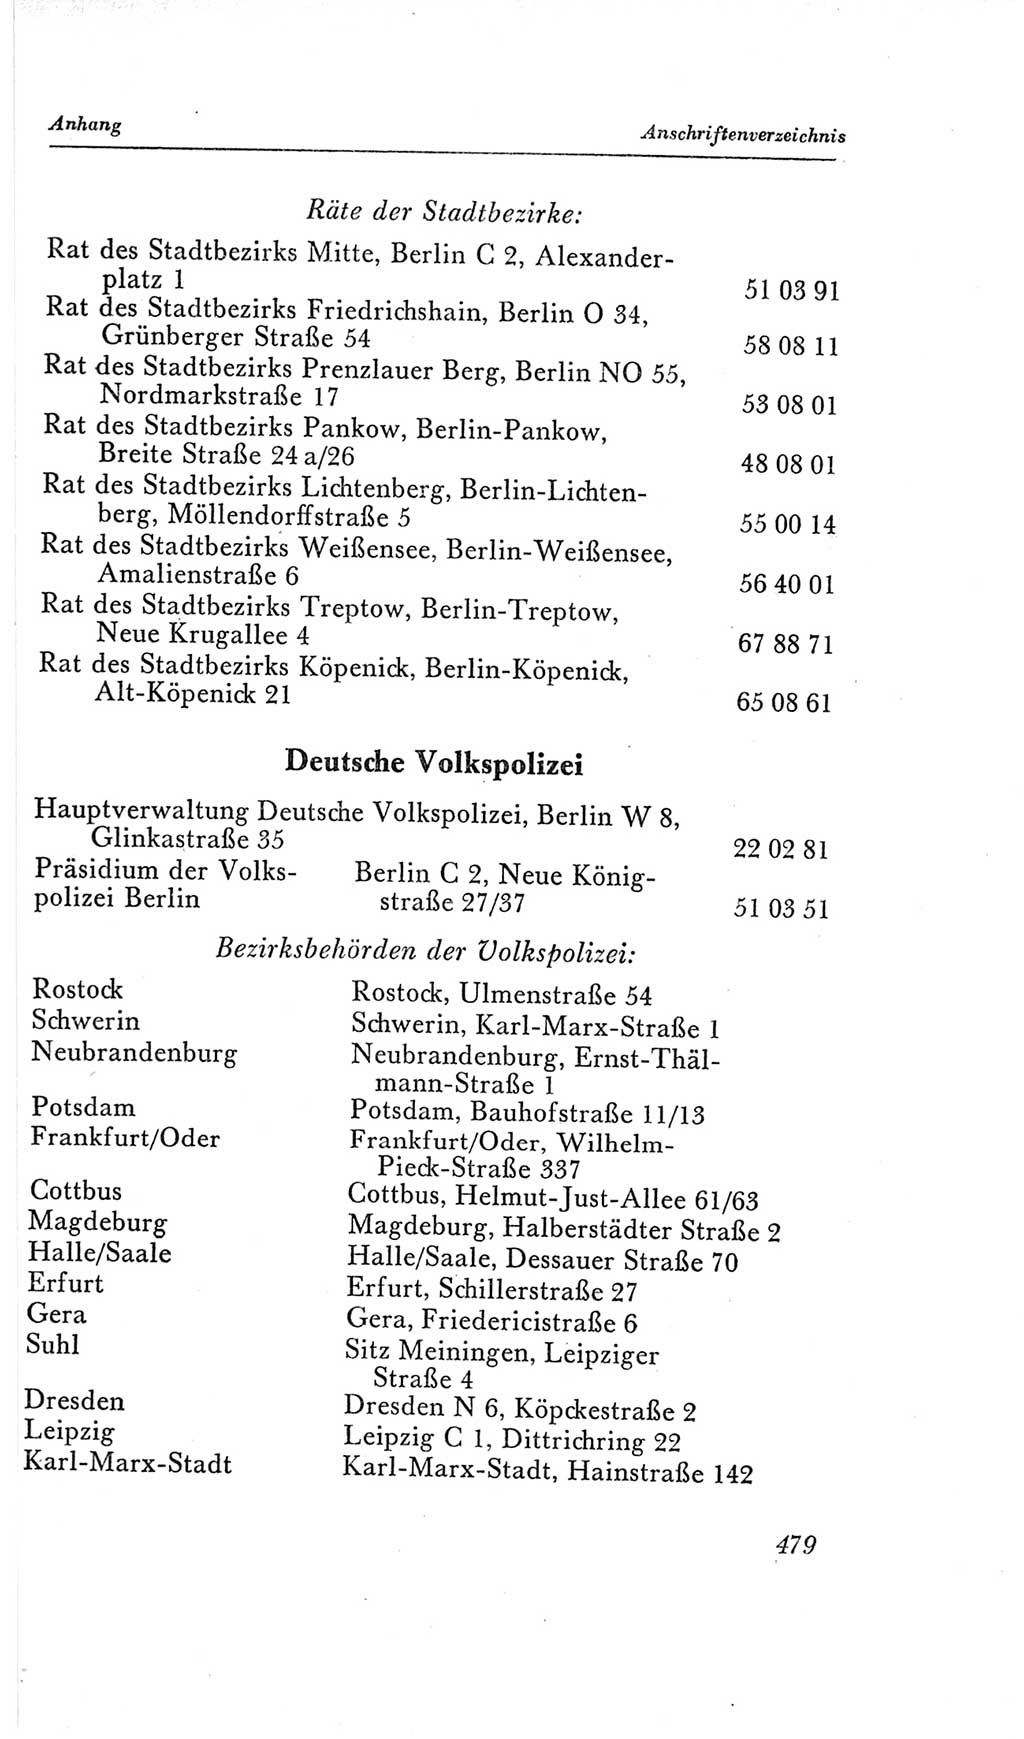 Handbuch der Volkskammer (VK) der Deutschen Demokratischen Republik (DDR), 2. Wahlperiode 1954-1958, Seite 479 (Hdb. VK. DDR, 2. WP. 1954-1958, S. 479)